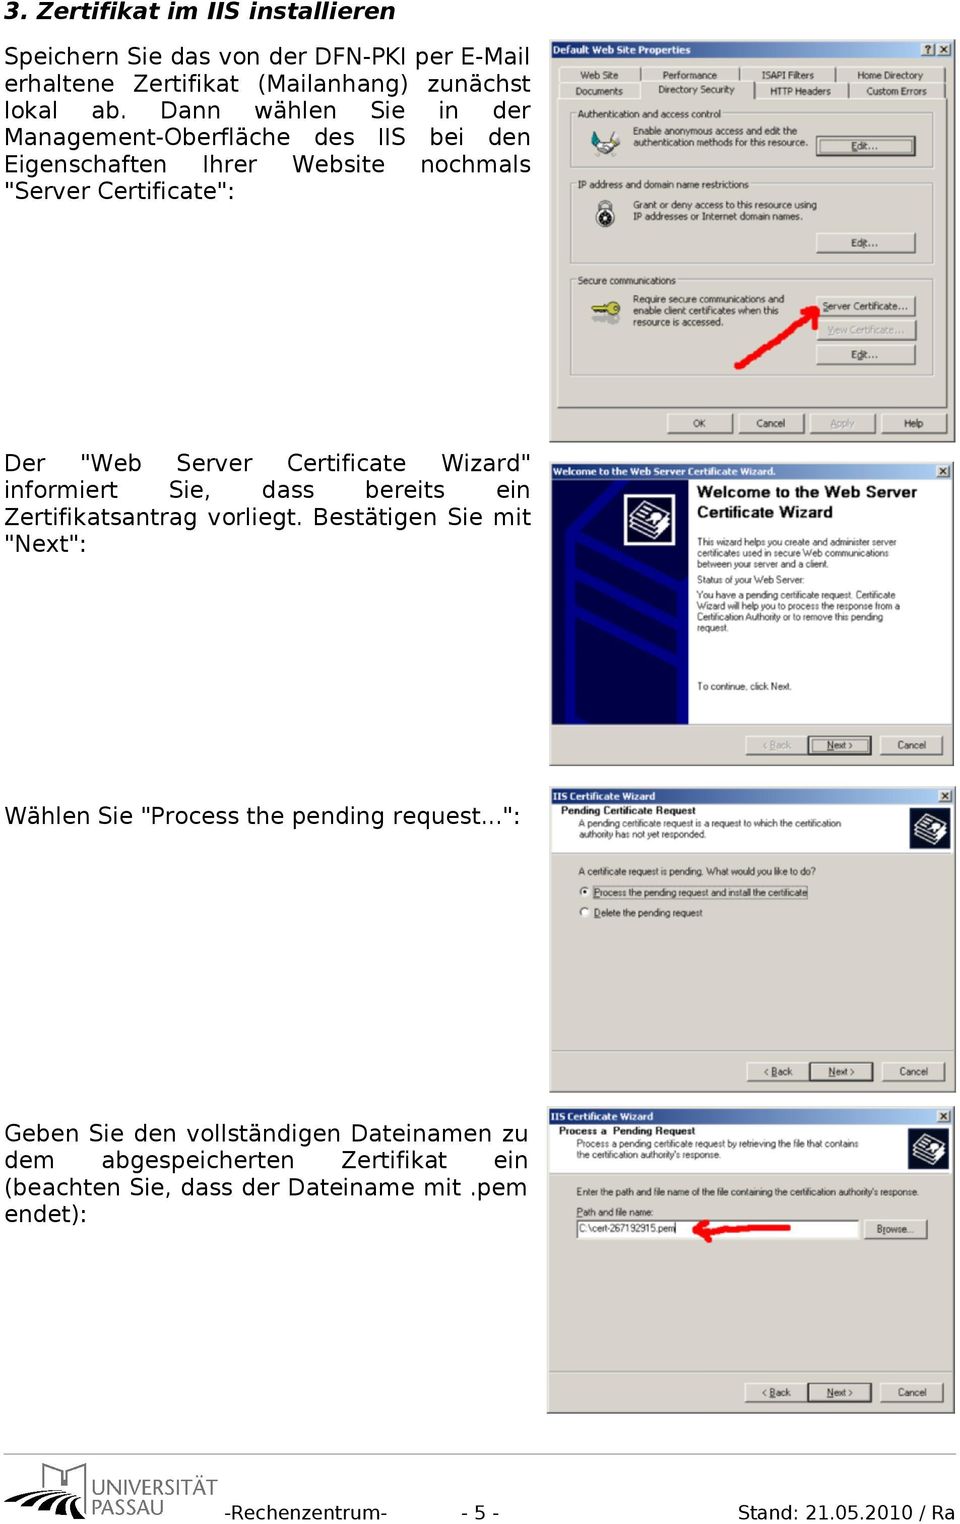 Wizard" informiert Sie, dass bereits ein Zertifikatsantrag vorliegt. Bestätigen Sie mit "Next": Wählen Sie "Process the pending request.